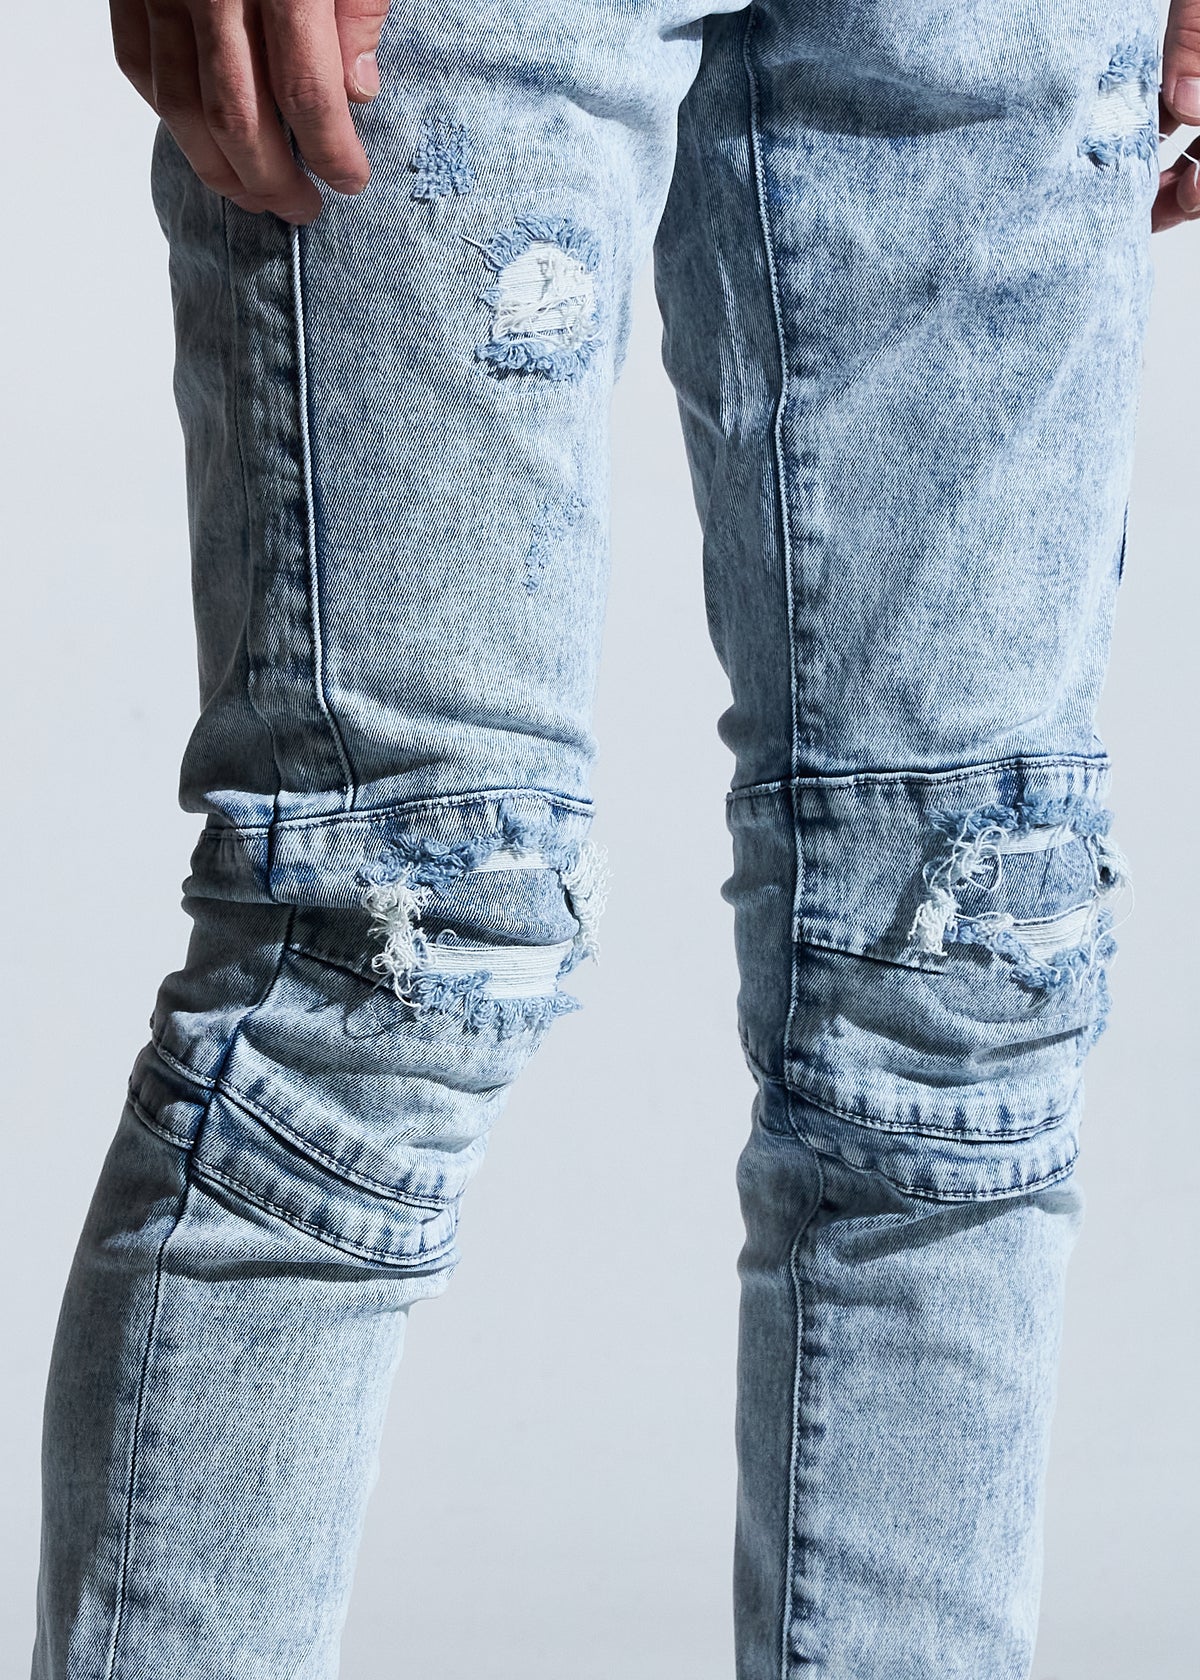 Crysp Denim-Hudson Skinny Jeans-Light Blue